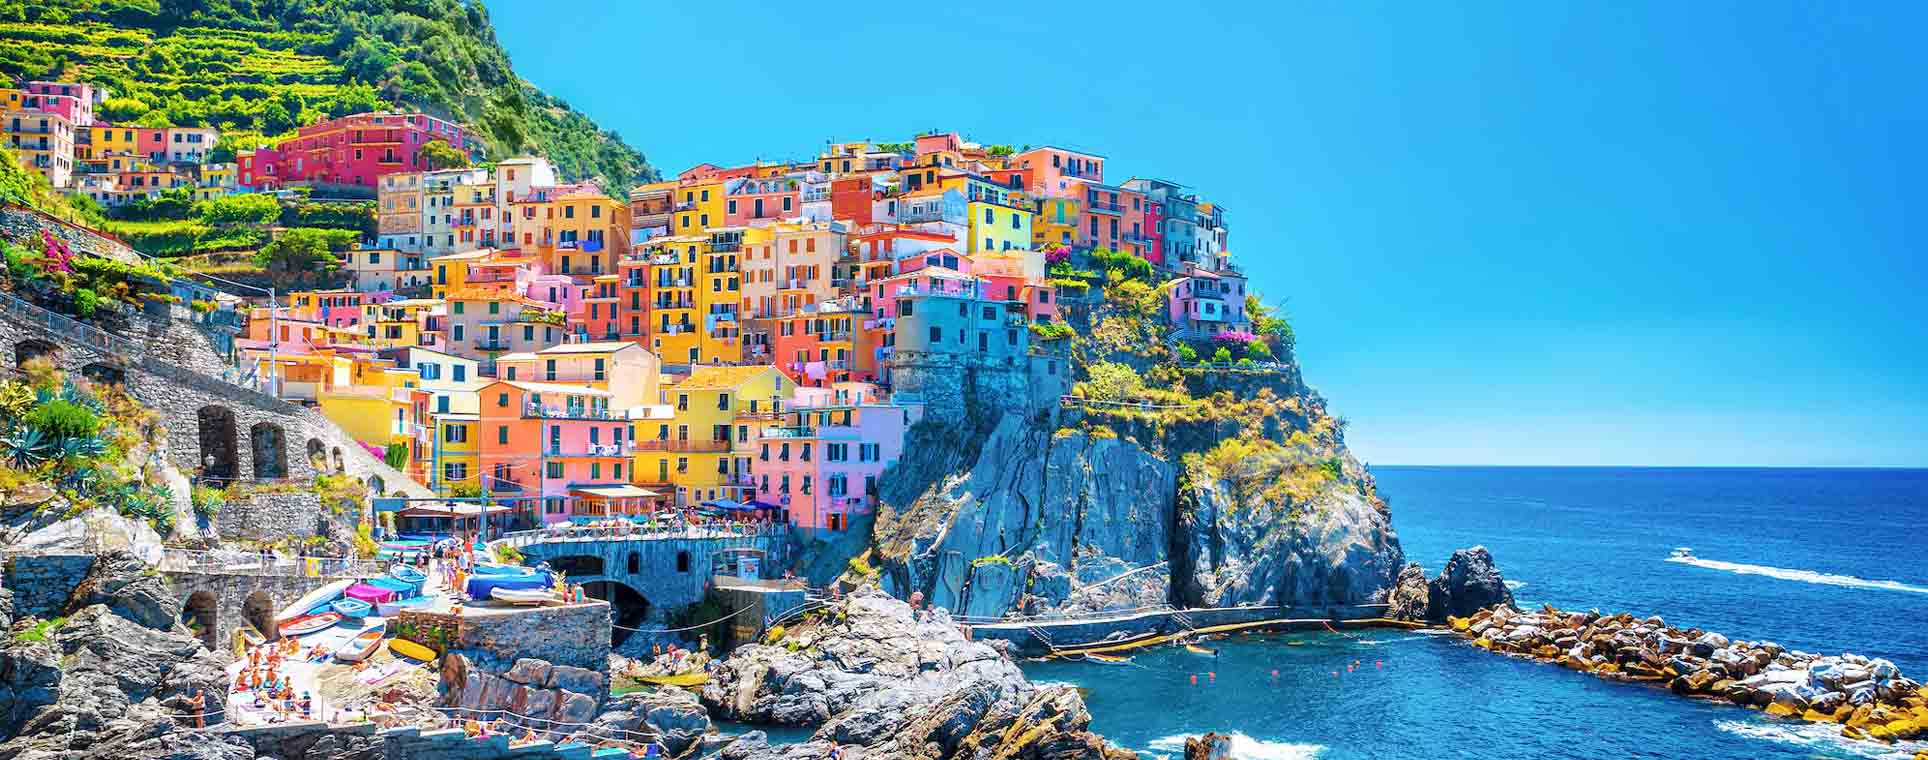 Amazing Italy